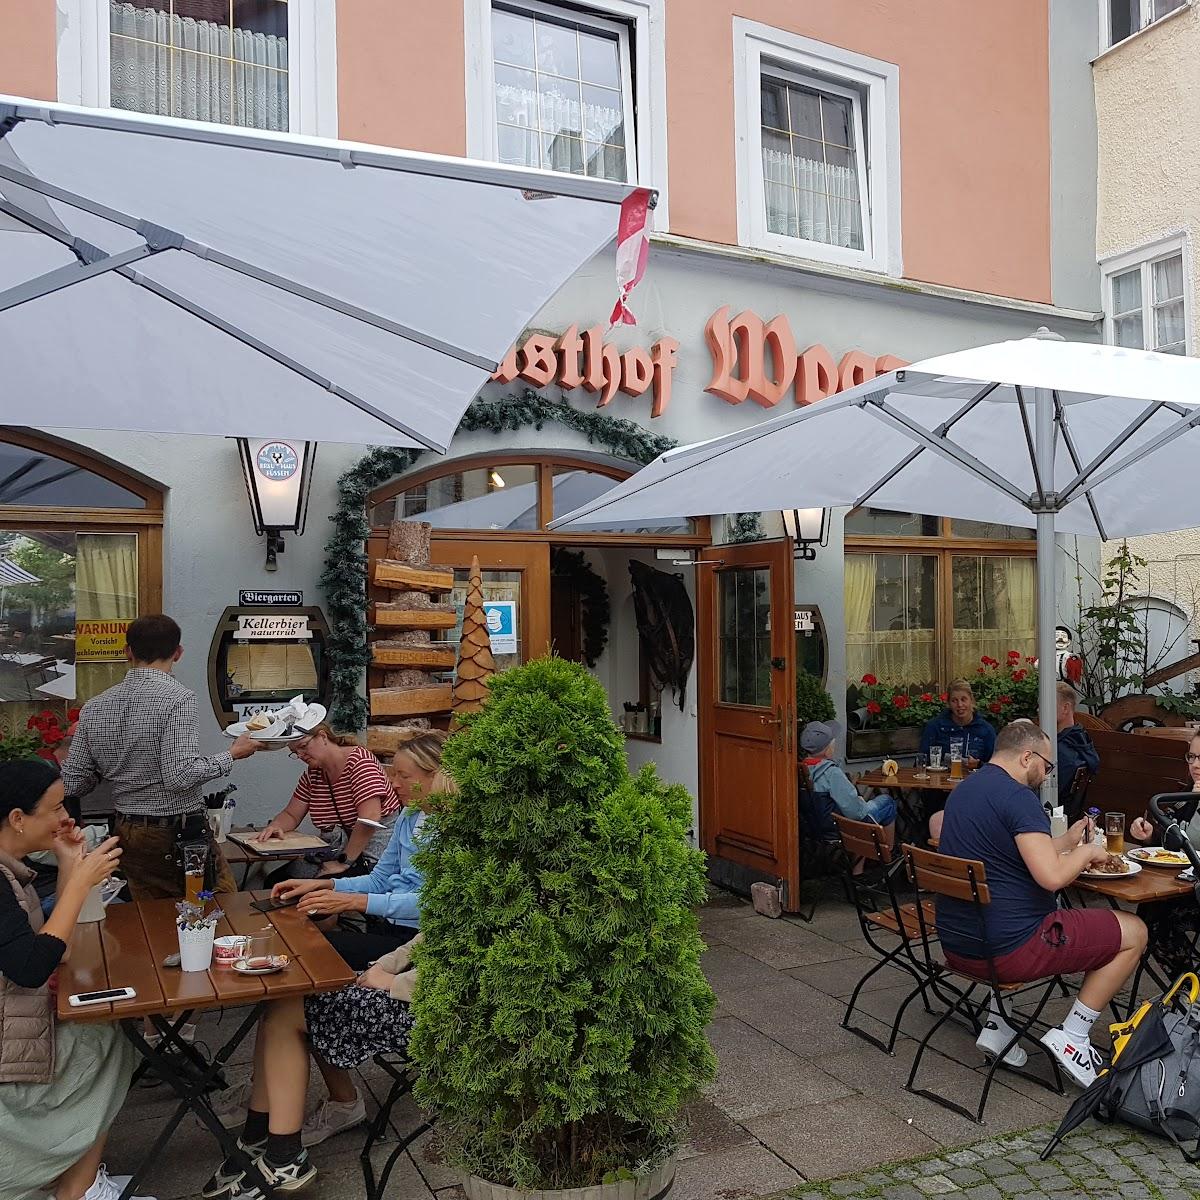 Restaurant "Hotel Zum Hechten" in  Füssen